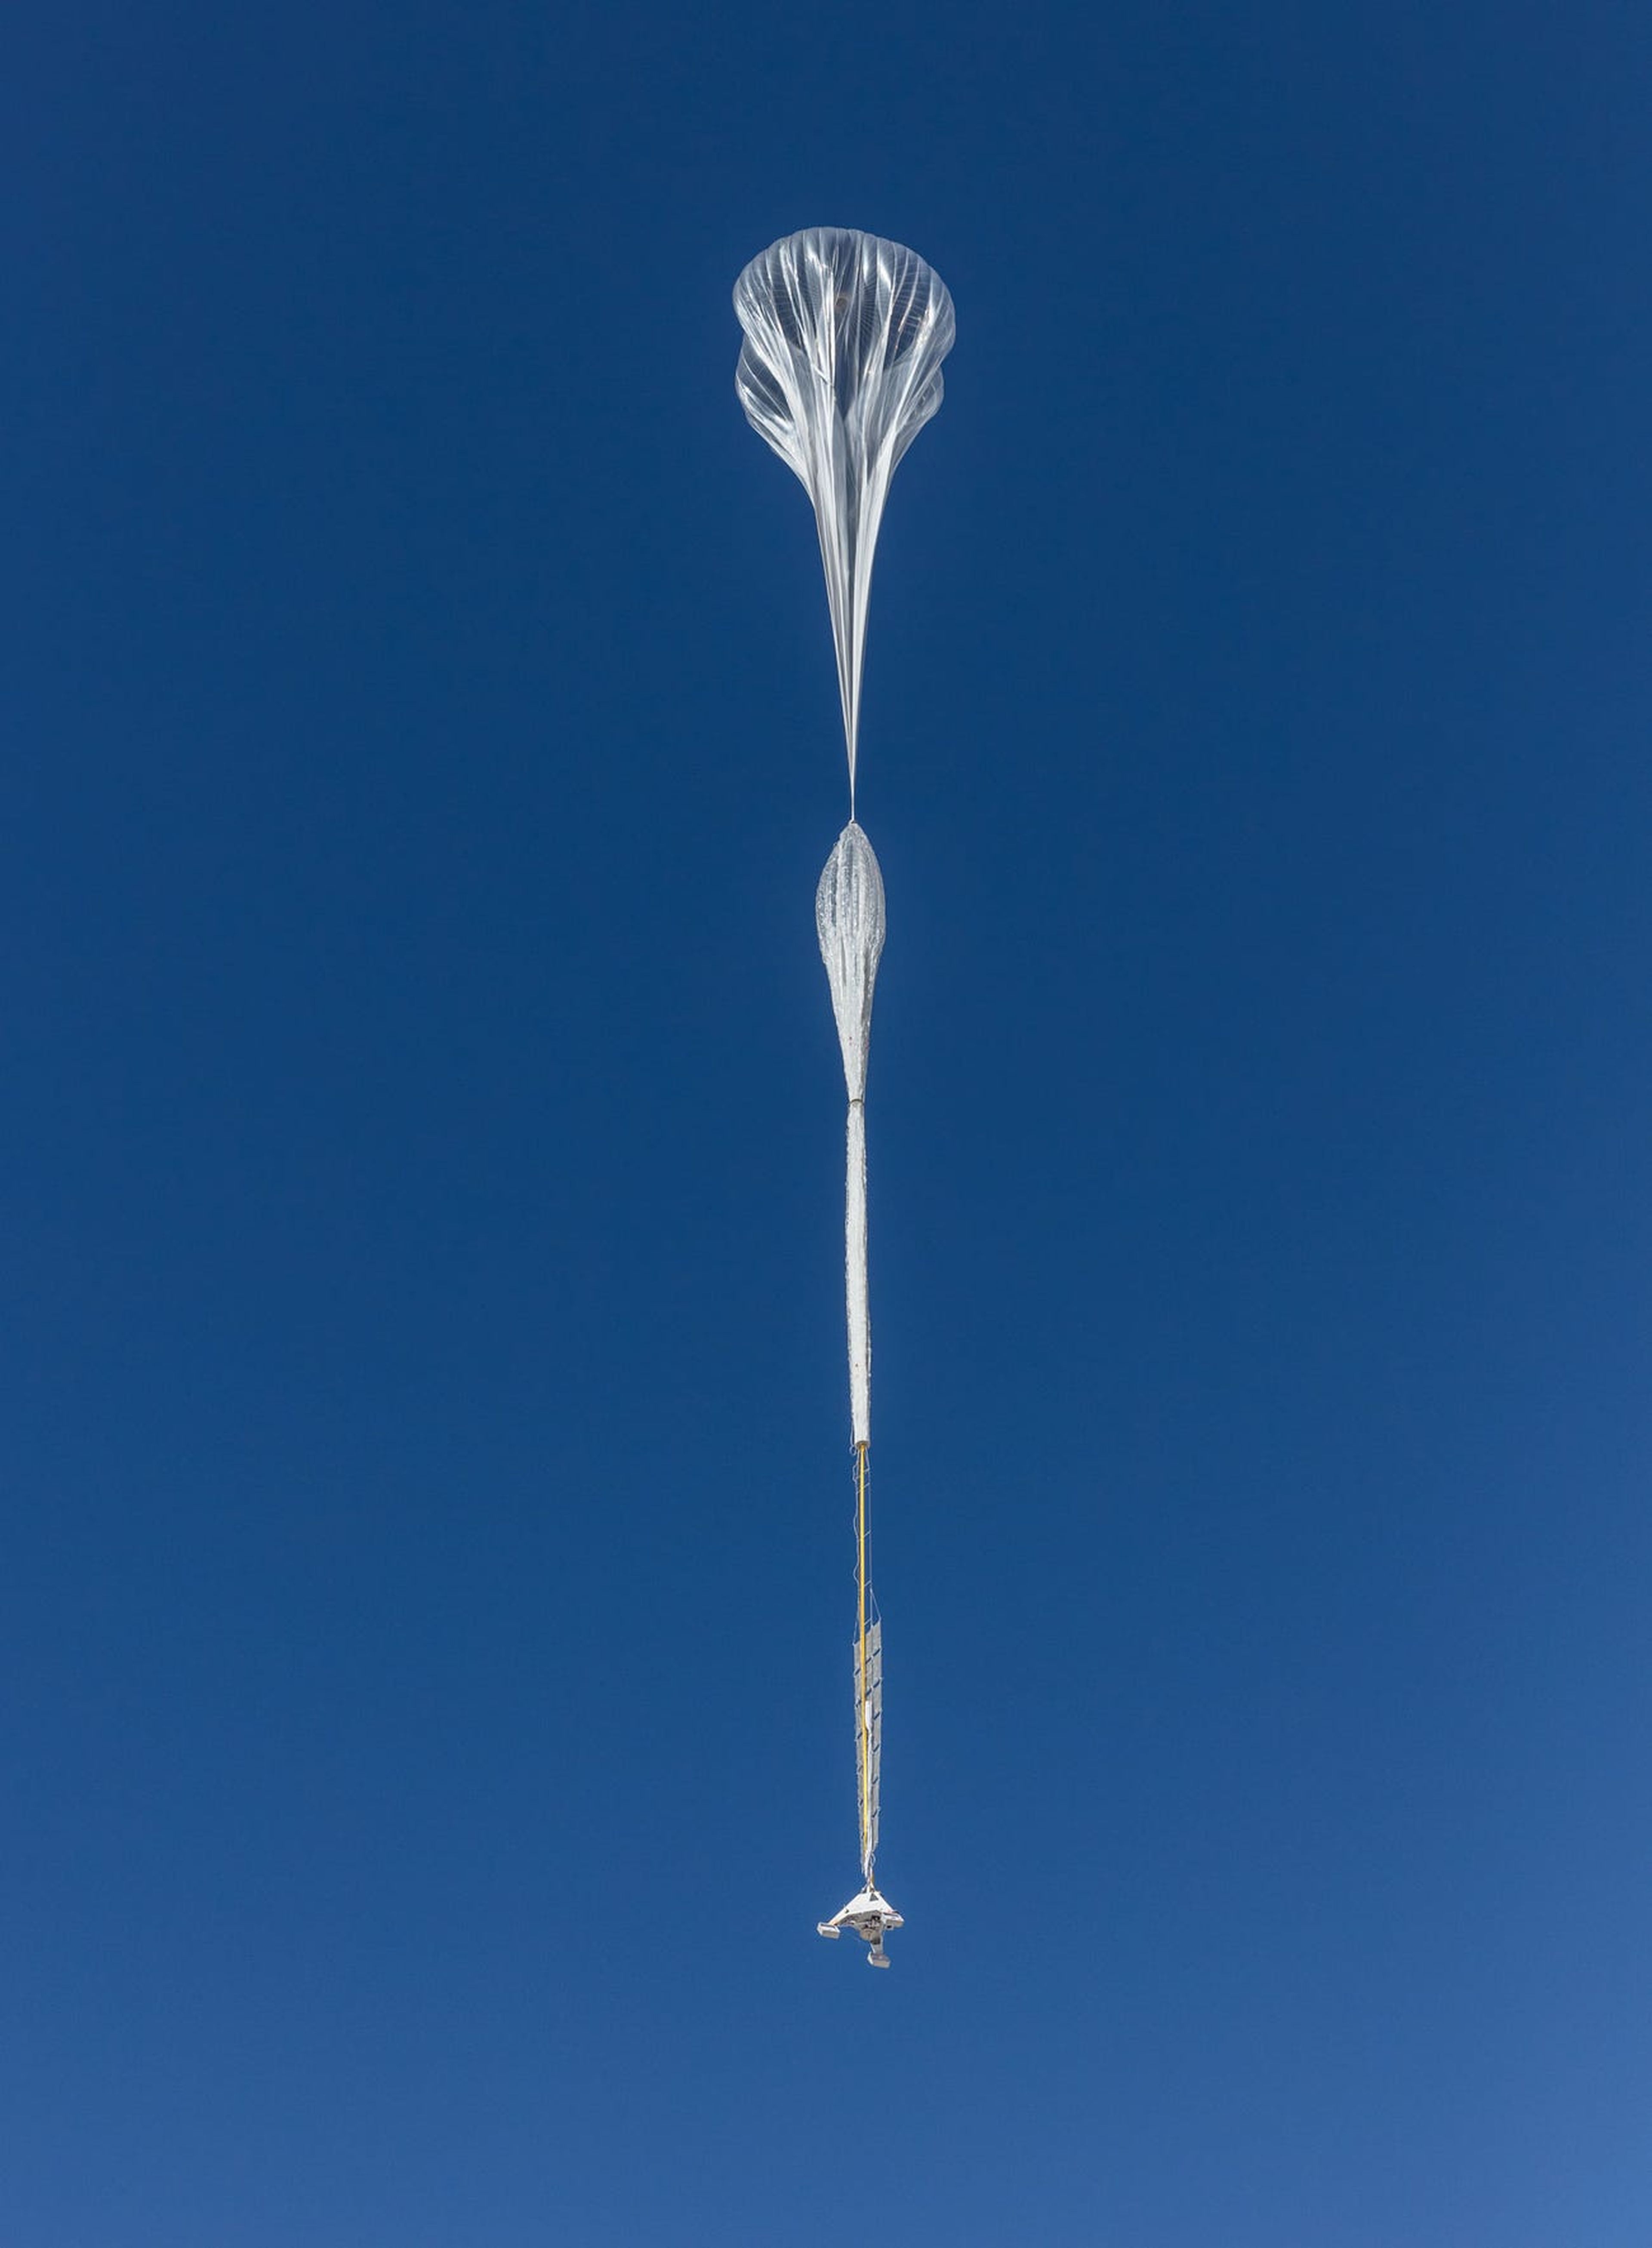 Un Stratolliter asciende dentro de una masa de aire para ganar altitud.